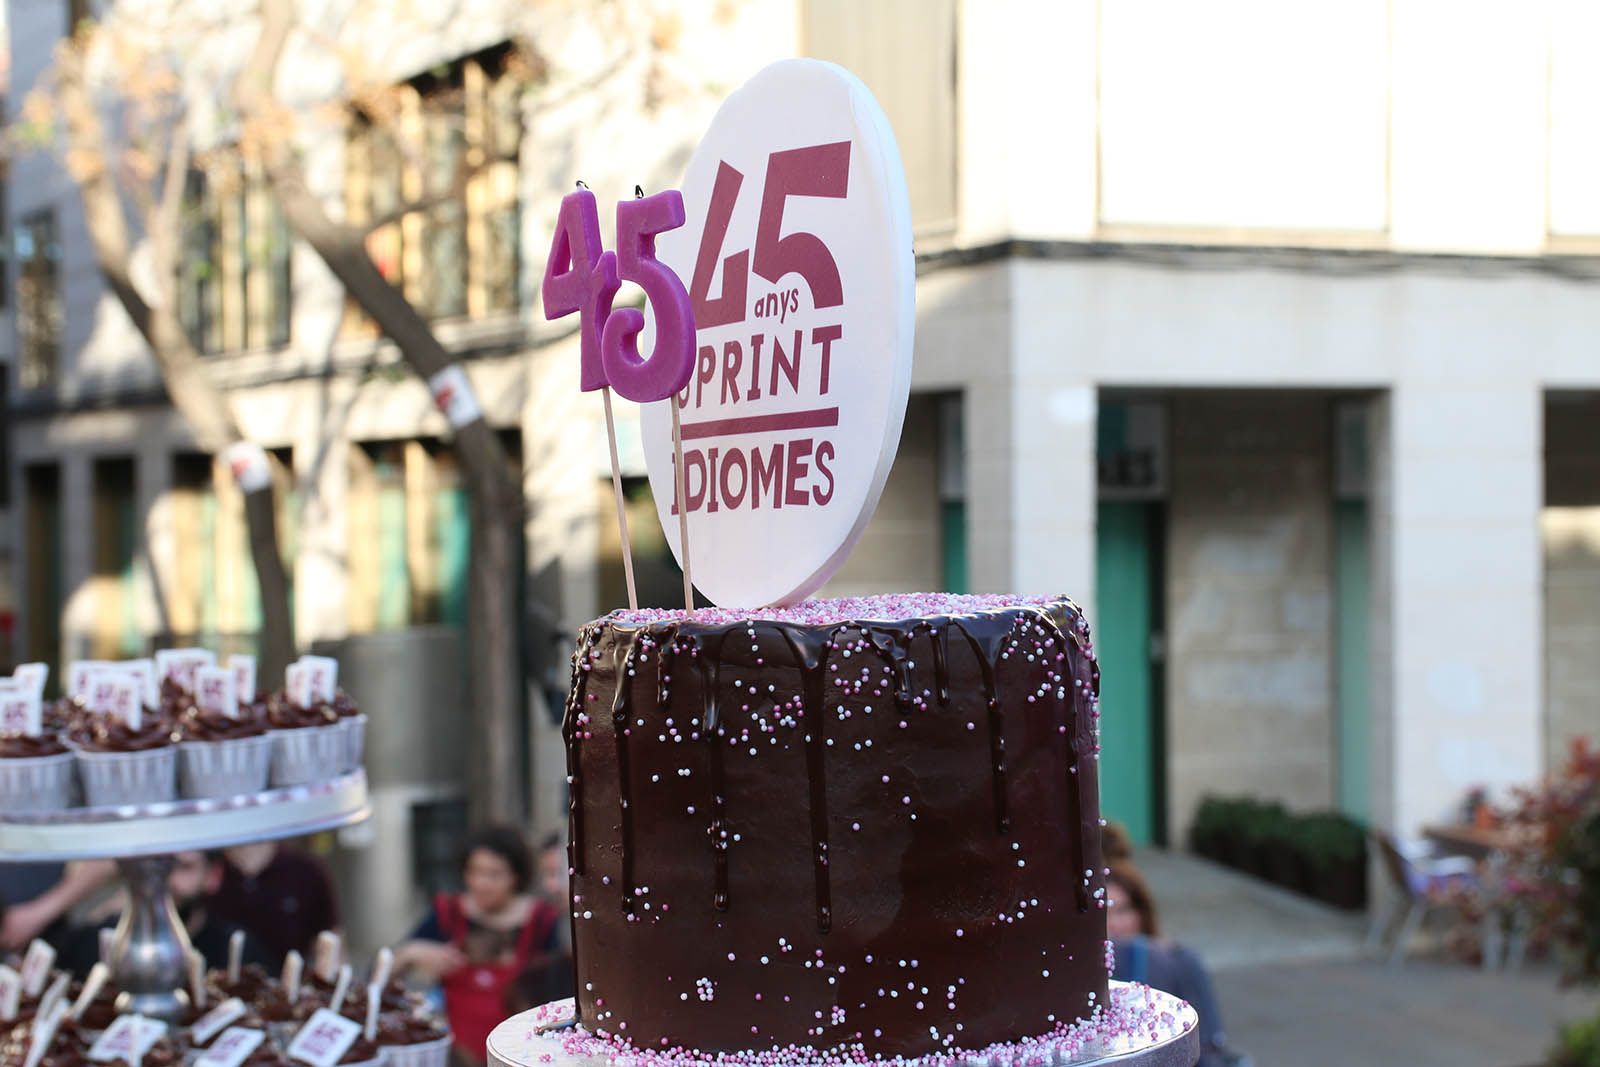 Festa dels 45 anys de Sprint Idiomes. Foto: Lali Álvarez